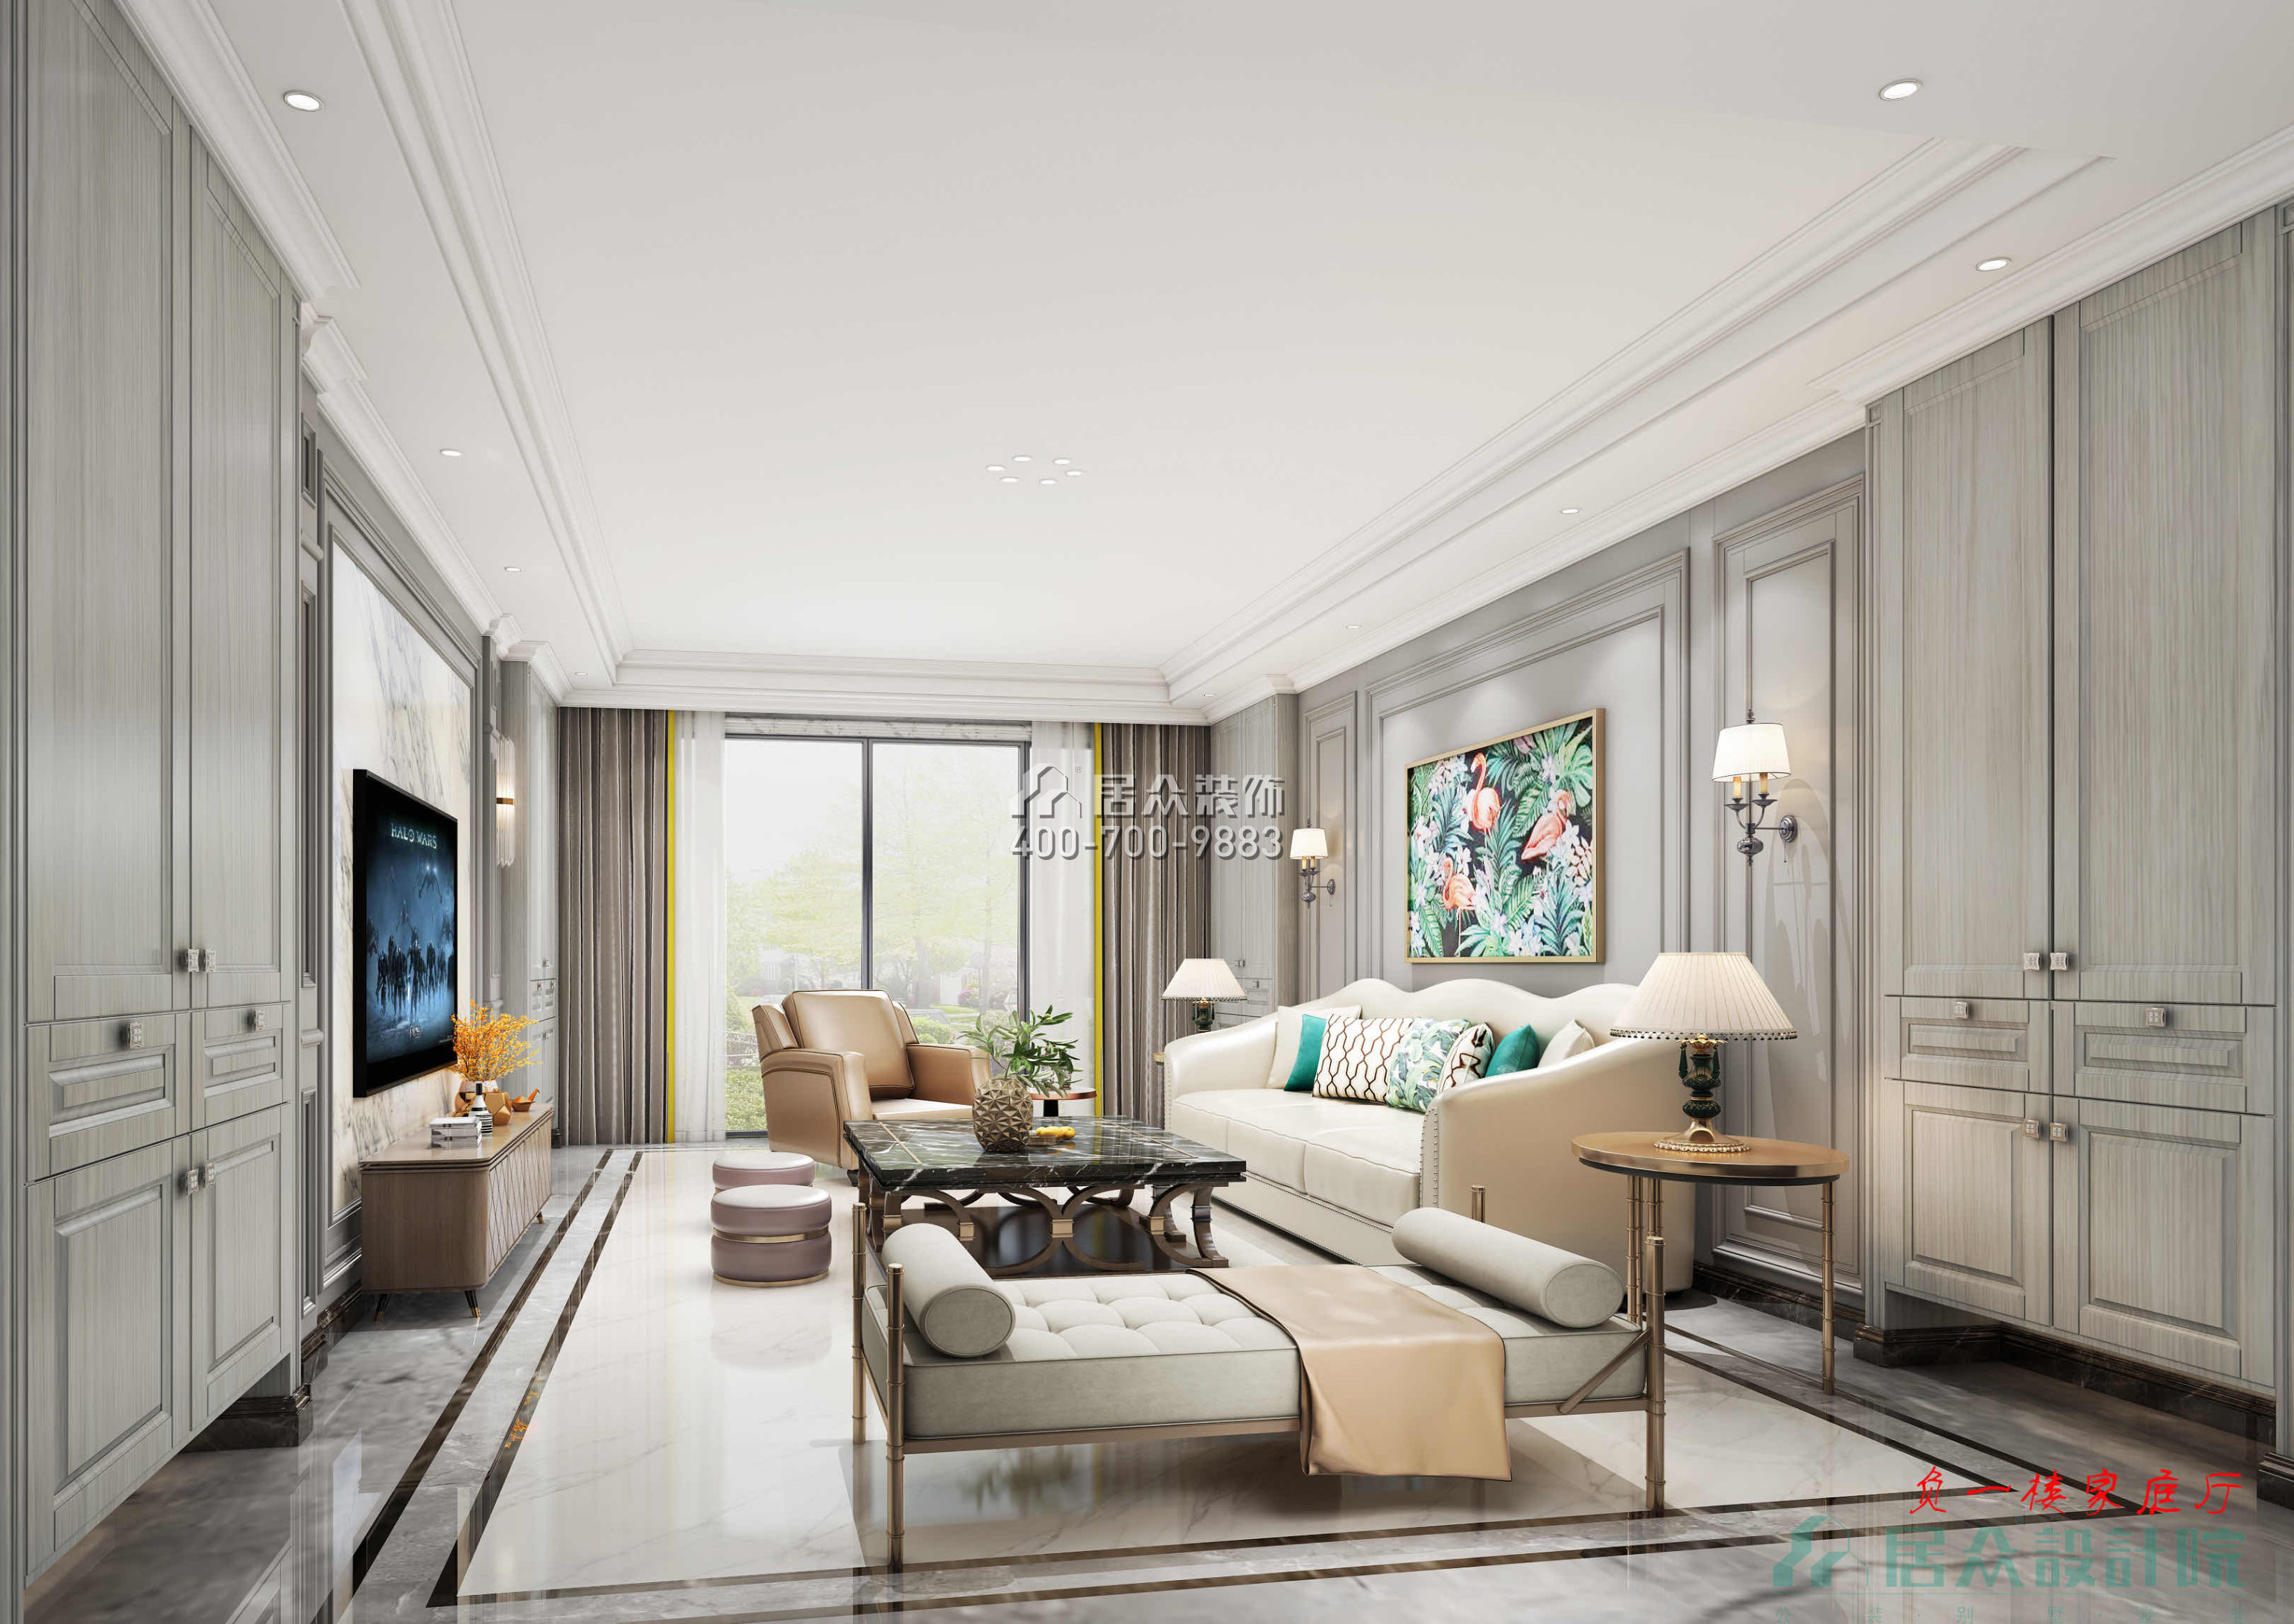 紫檀山700平方米現代簡約風格別墅戶型客廳裝修效果圖